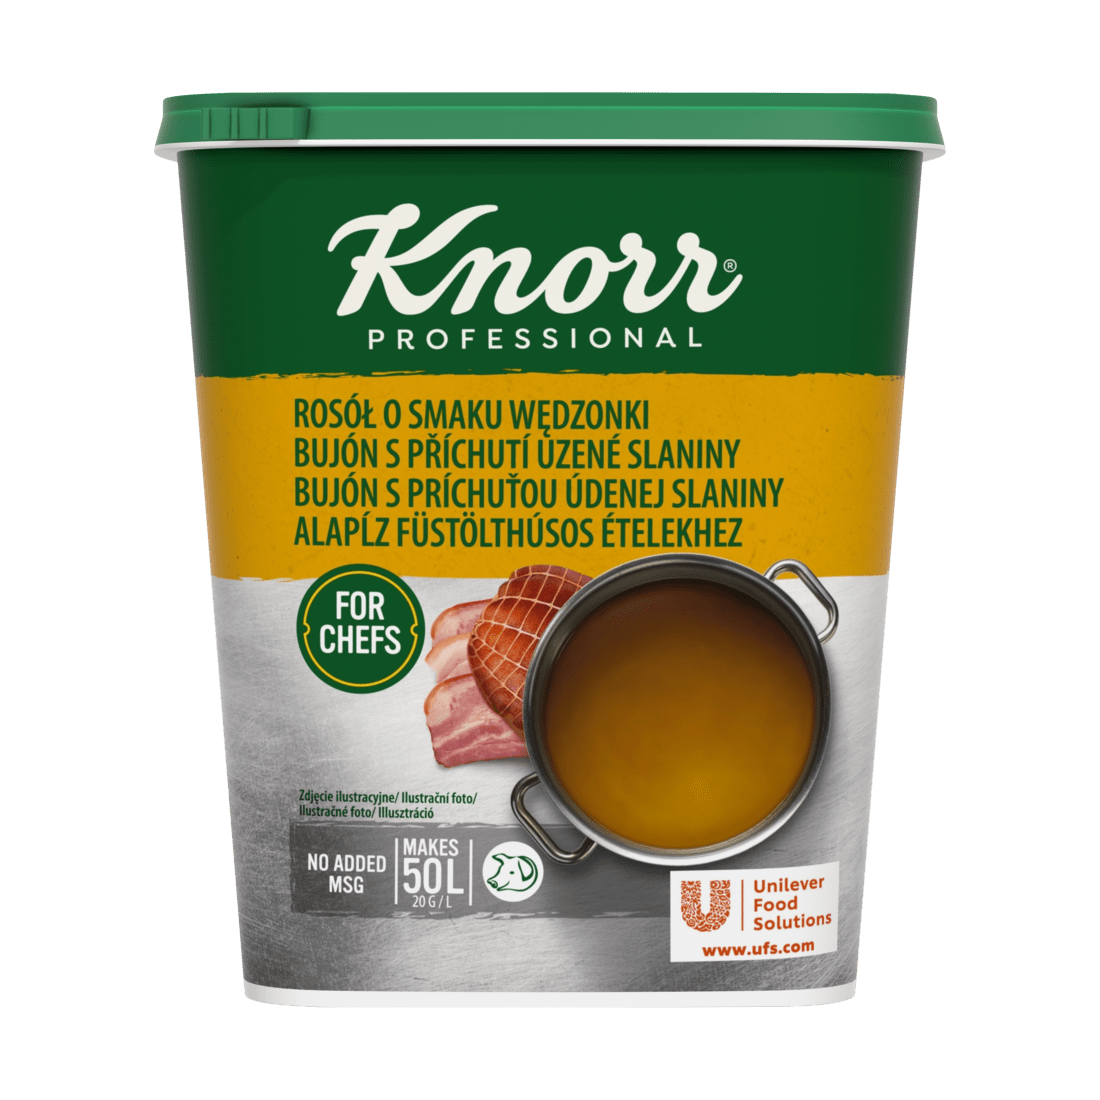 KNORR Professional Bujón s příchutí uzené slaniny 1kg - 